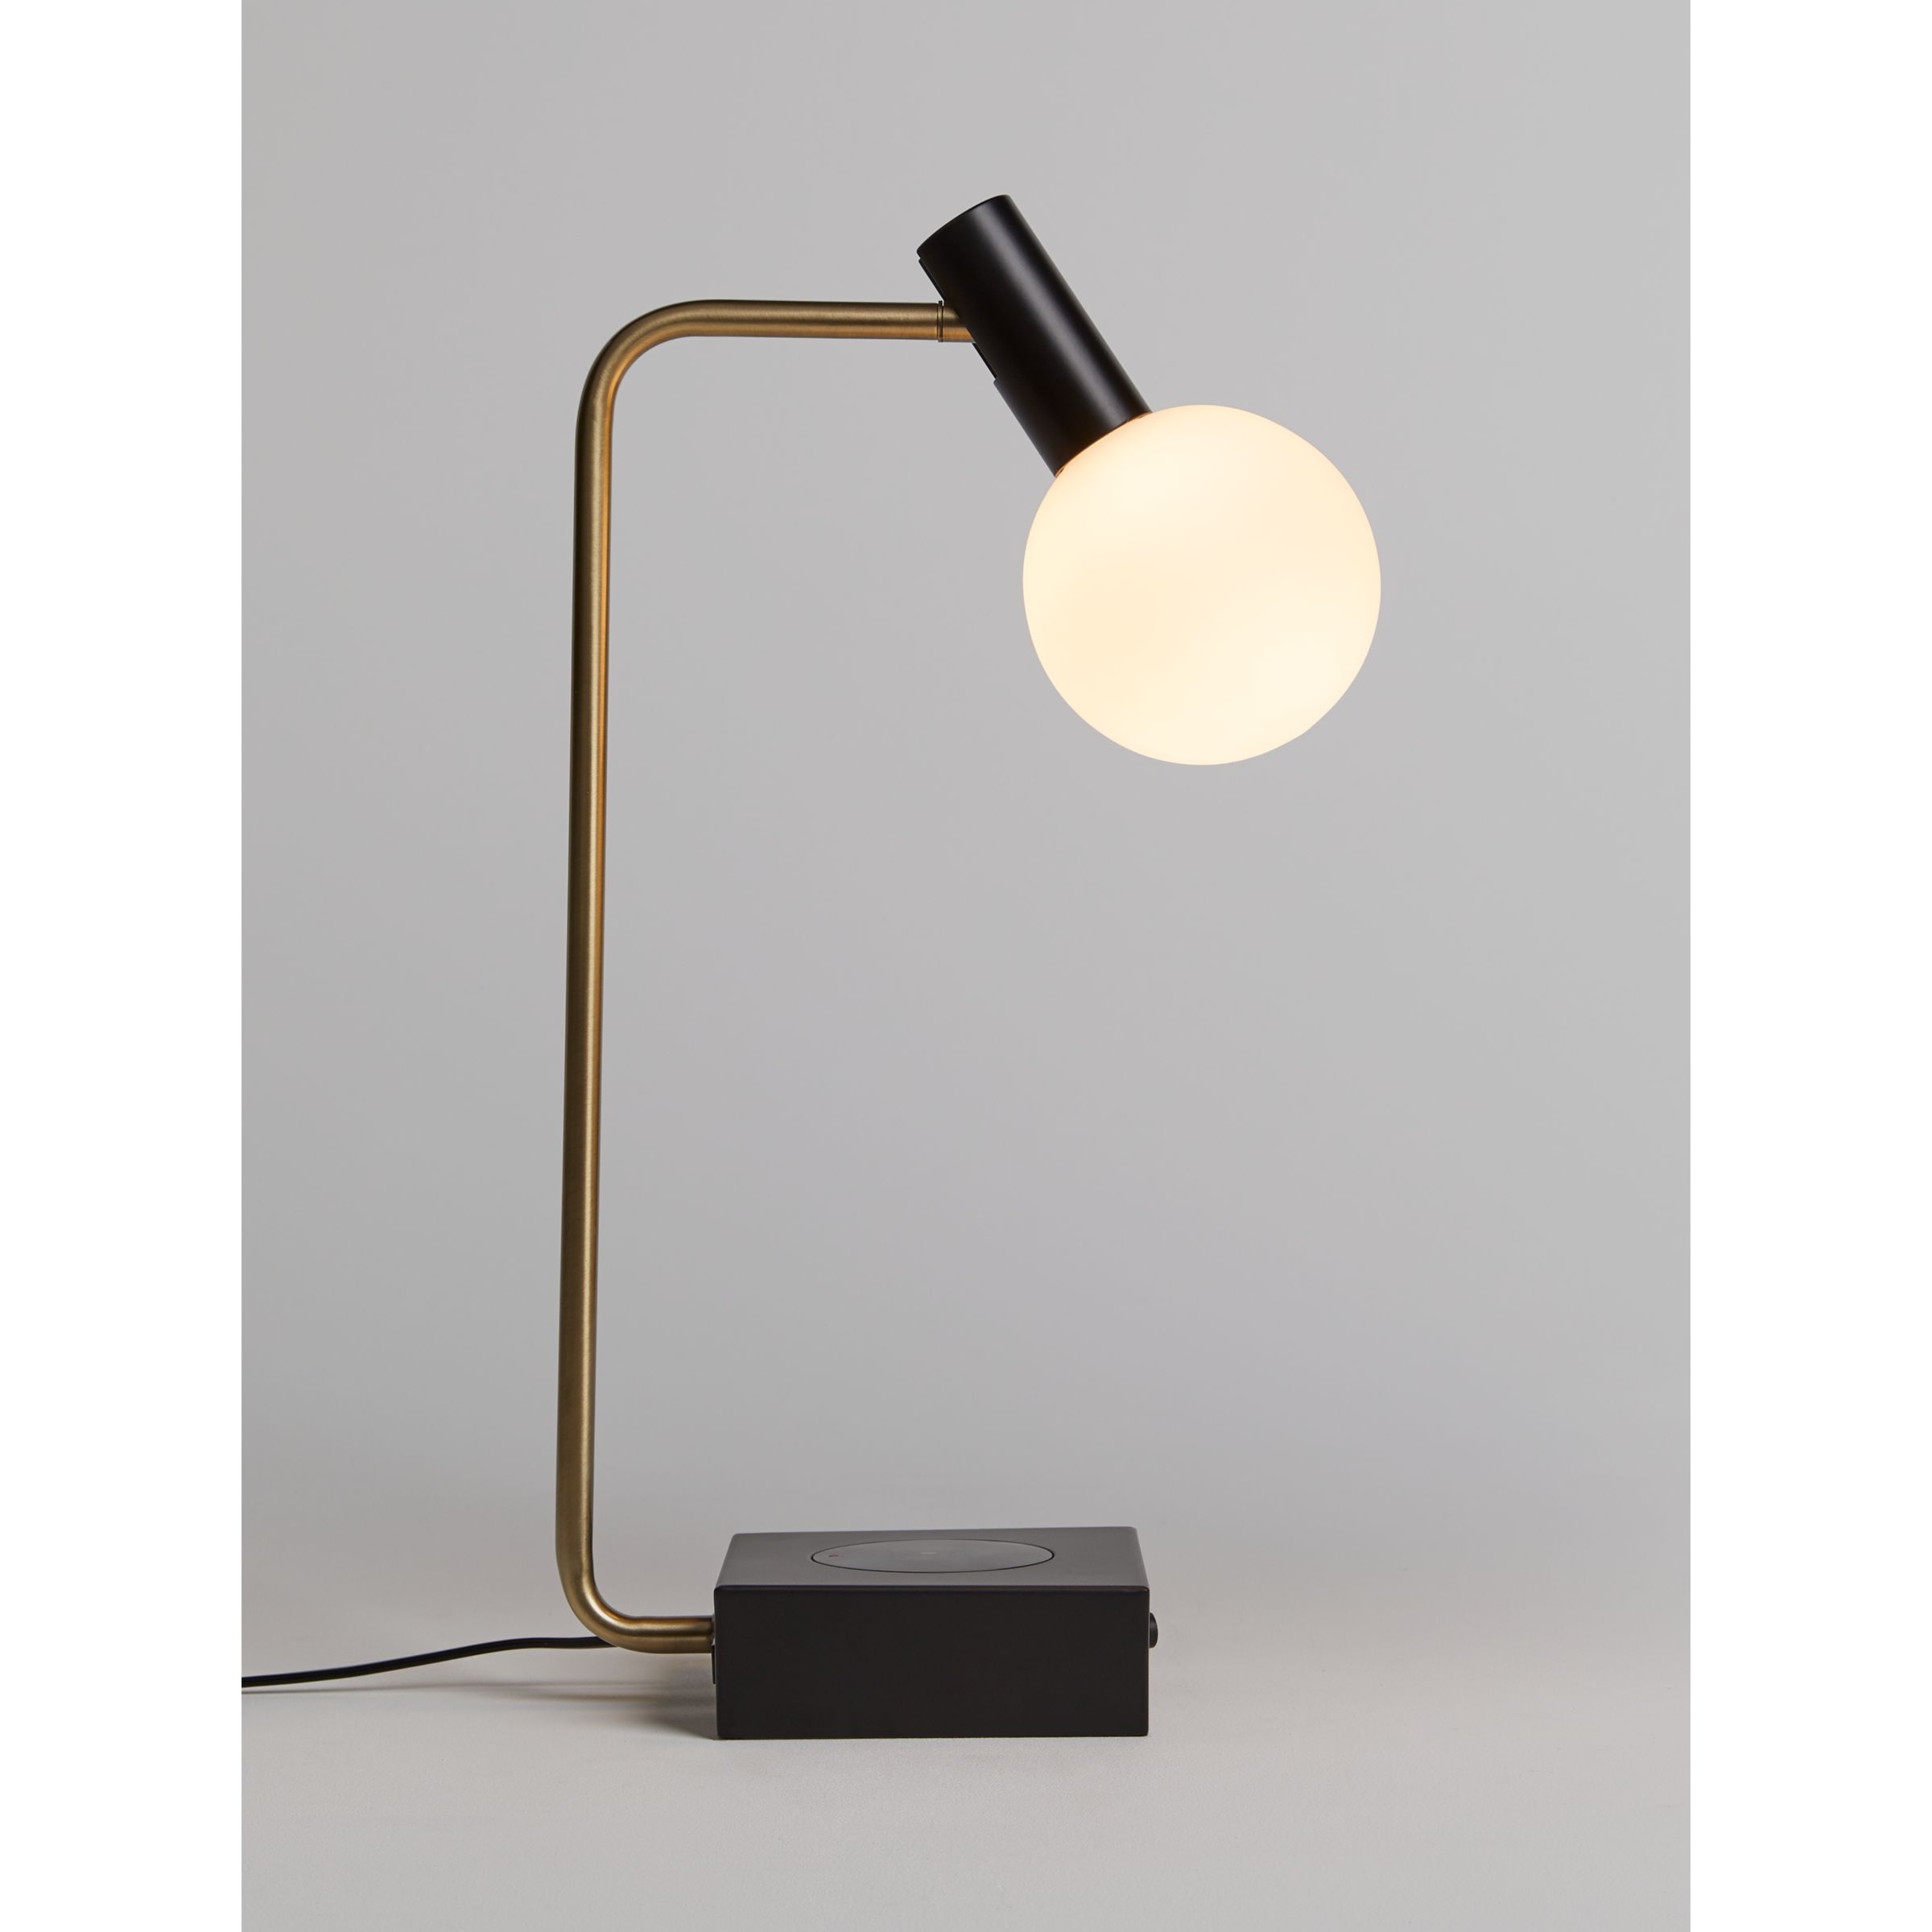 John Lewis Spenser Wireless Charger Table Lamp, Black/Brass